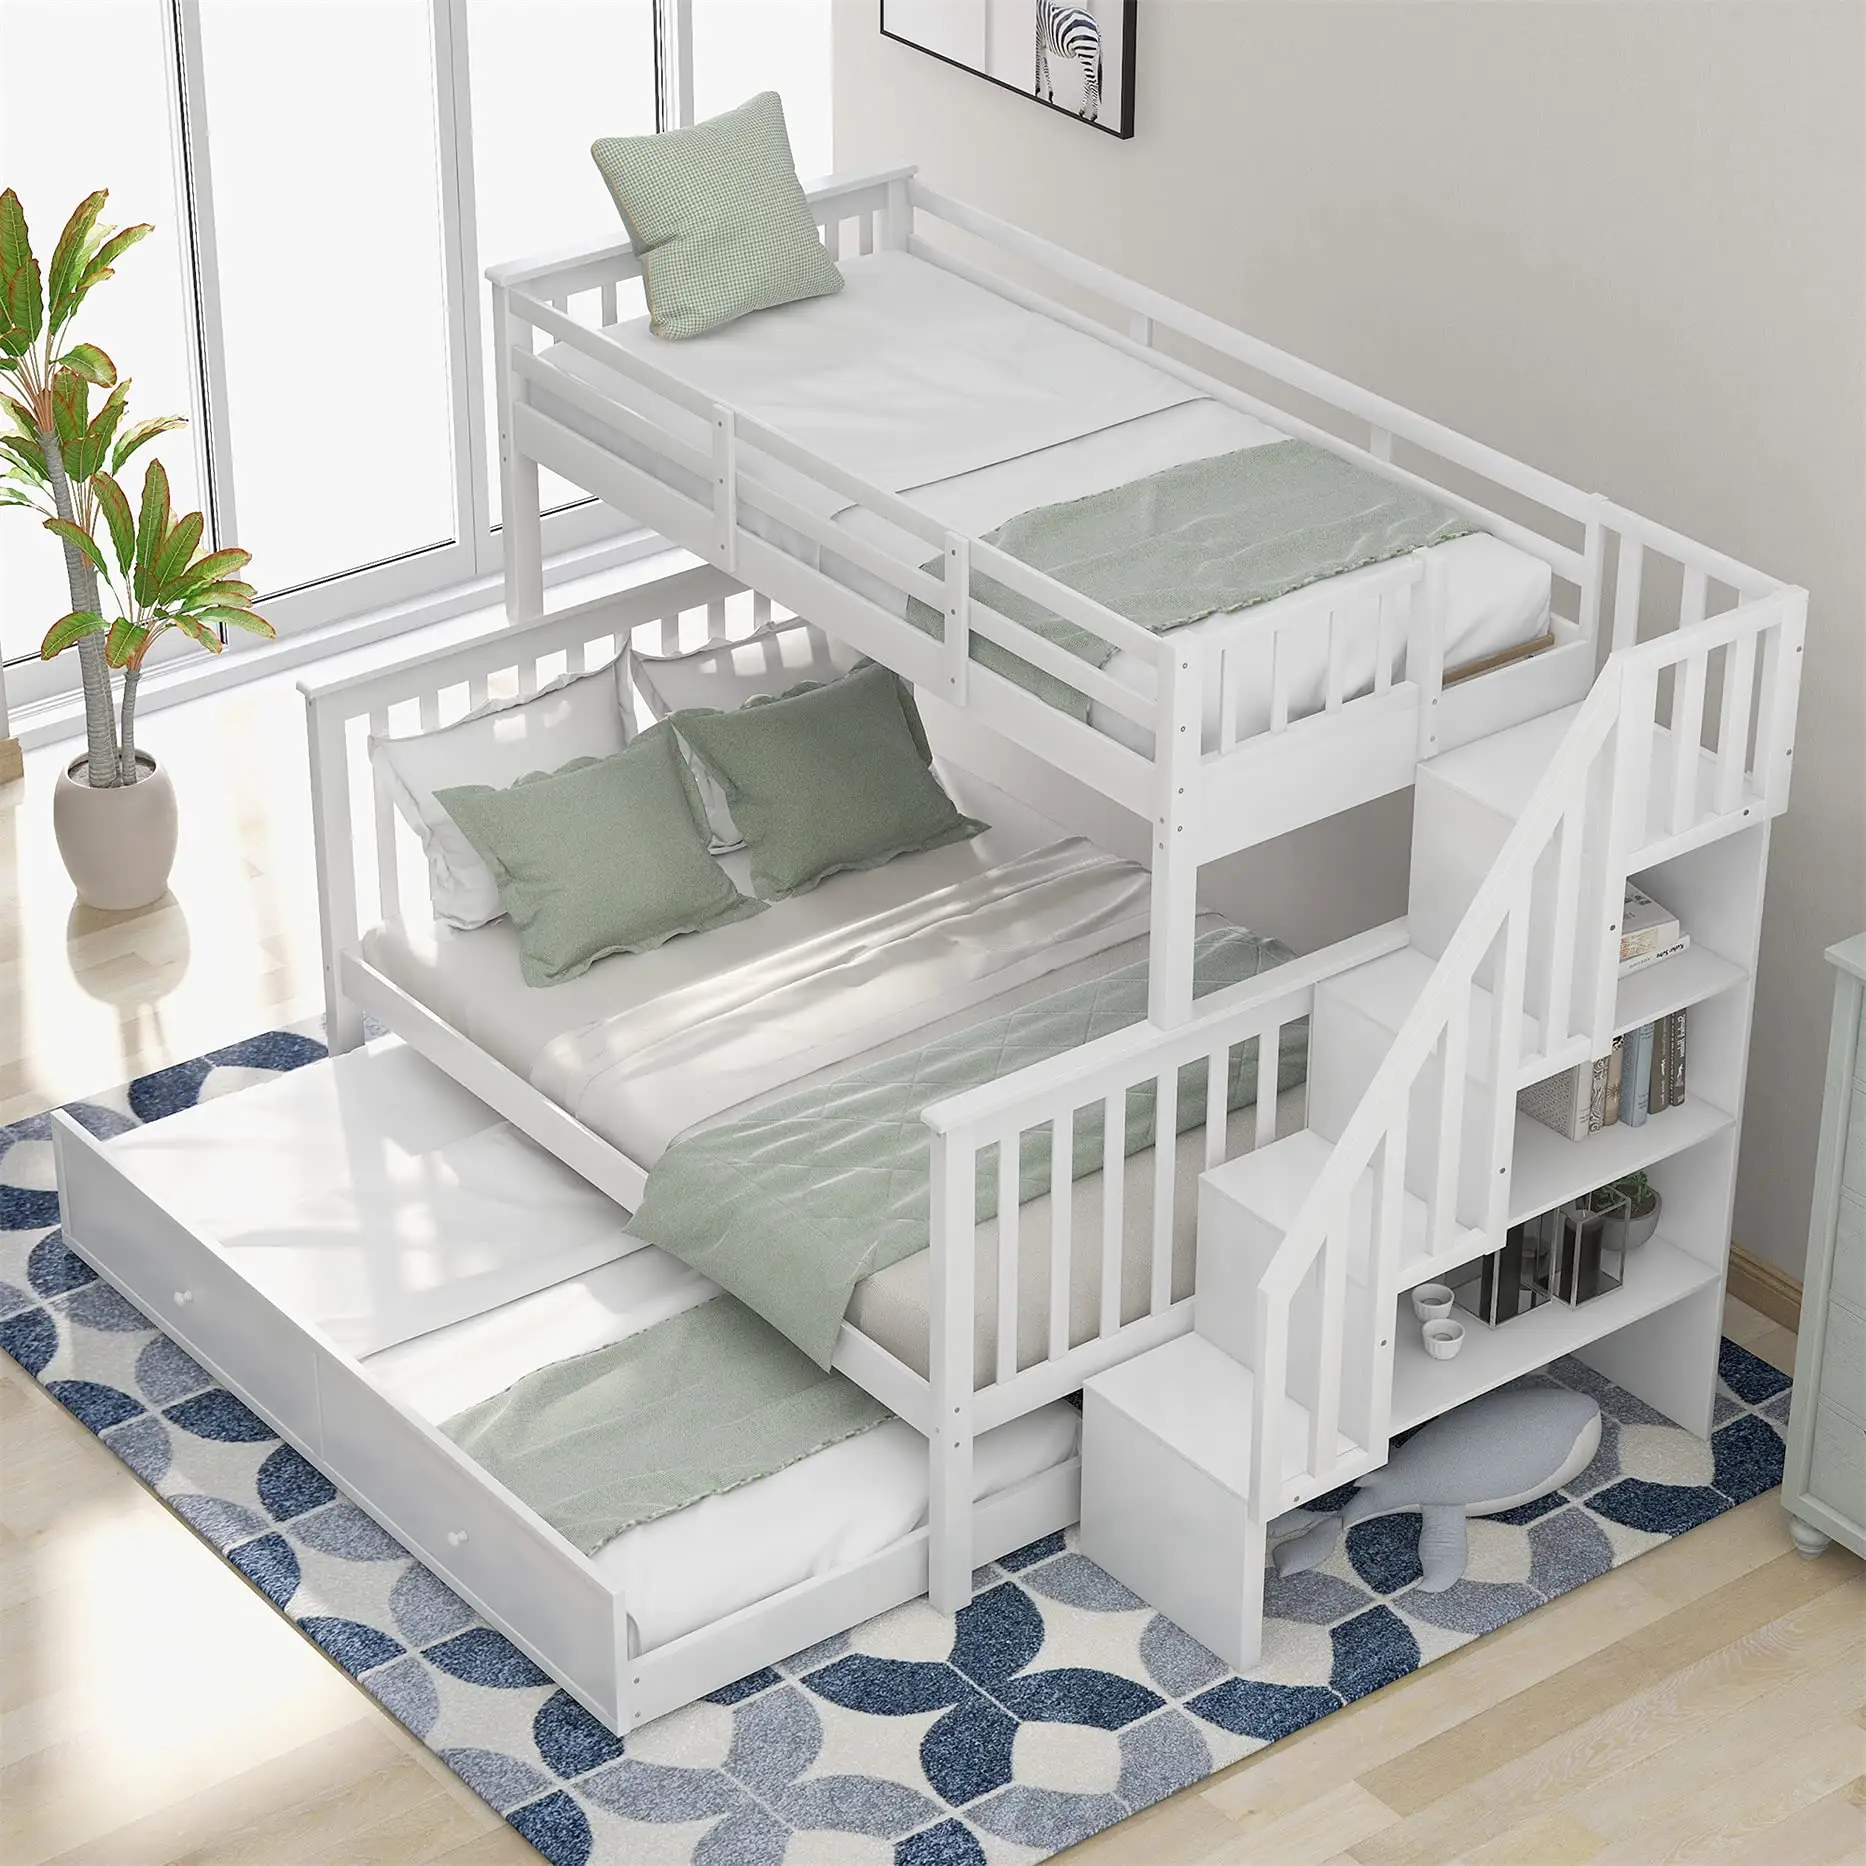 Modern tasarım MDF kurulu çocuk yatağı çocuk yatağı ahşap çocuk çocuk beyaz tek ranza depolama ile çocuklar için